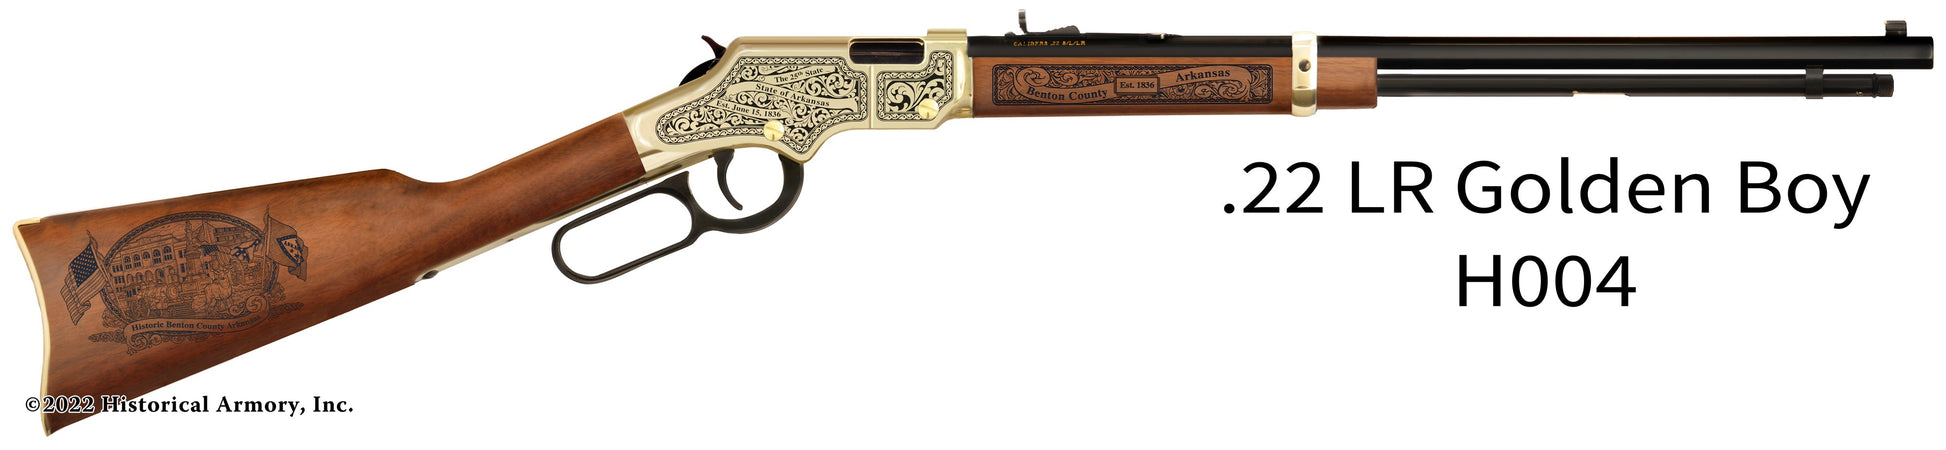 Benton County Arkansas Engraved Henry Golden Boy Rifle